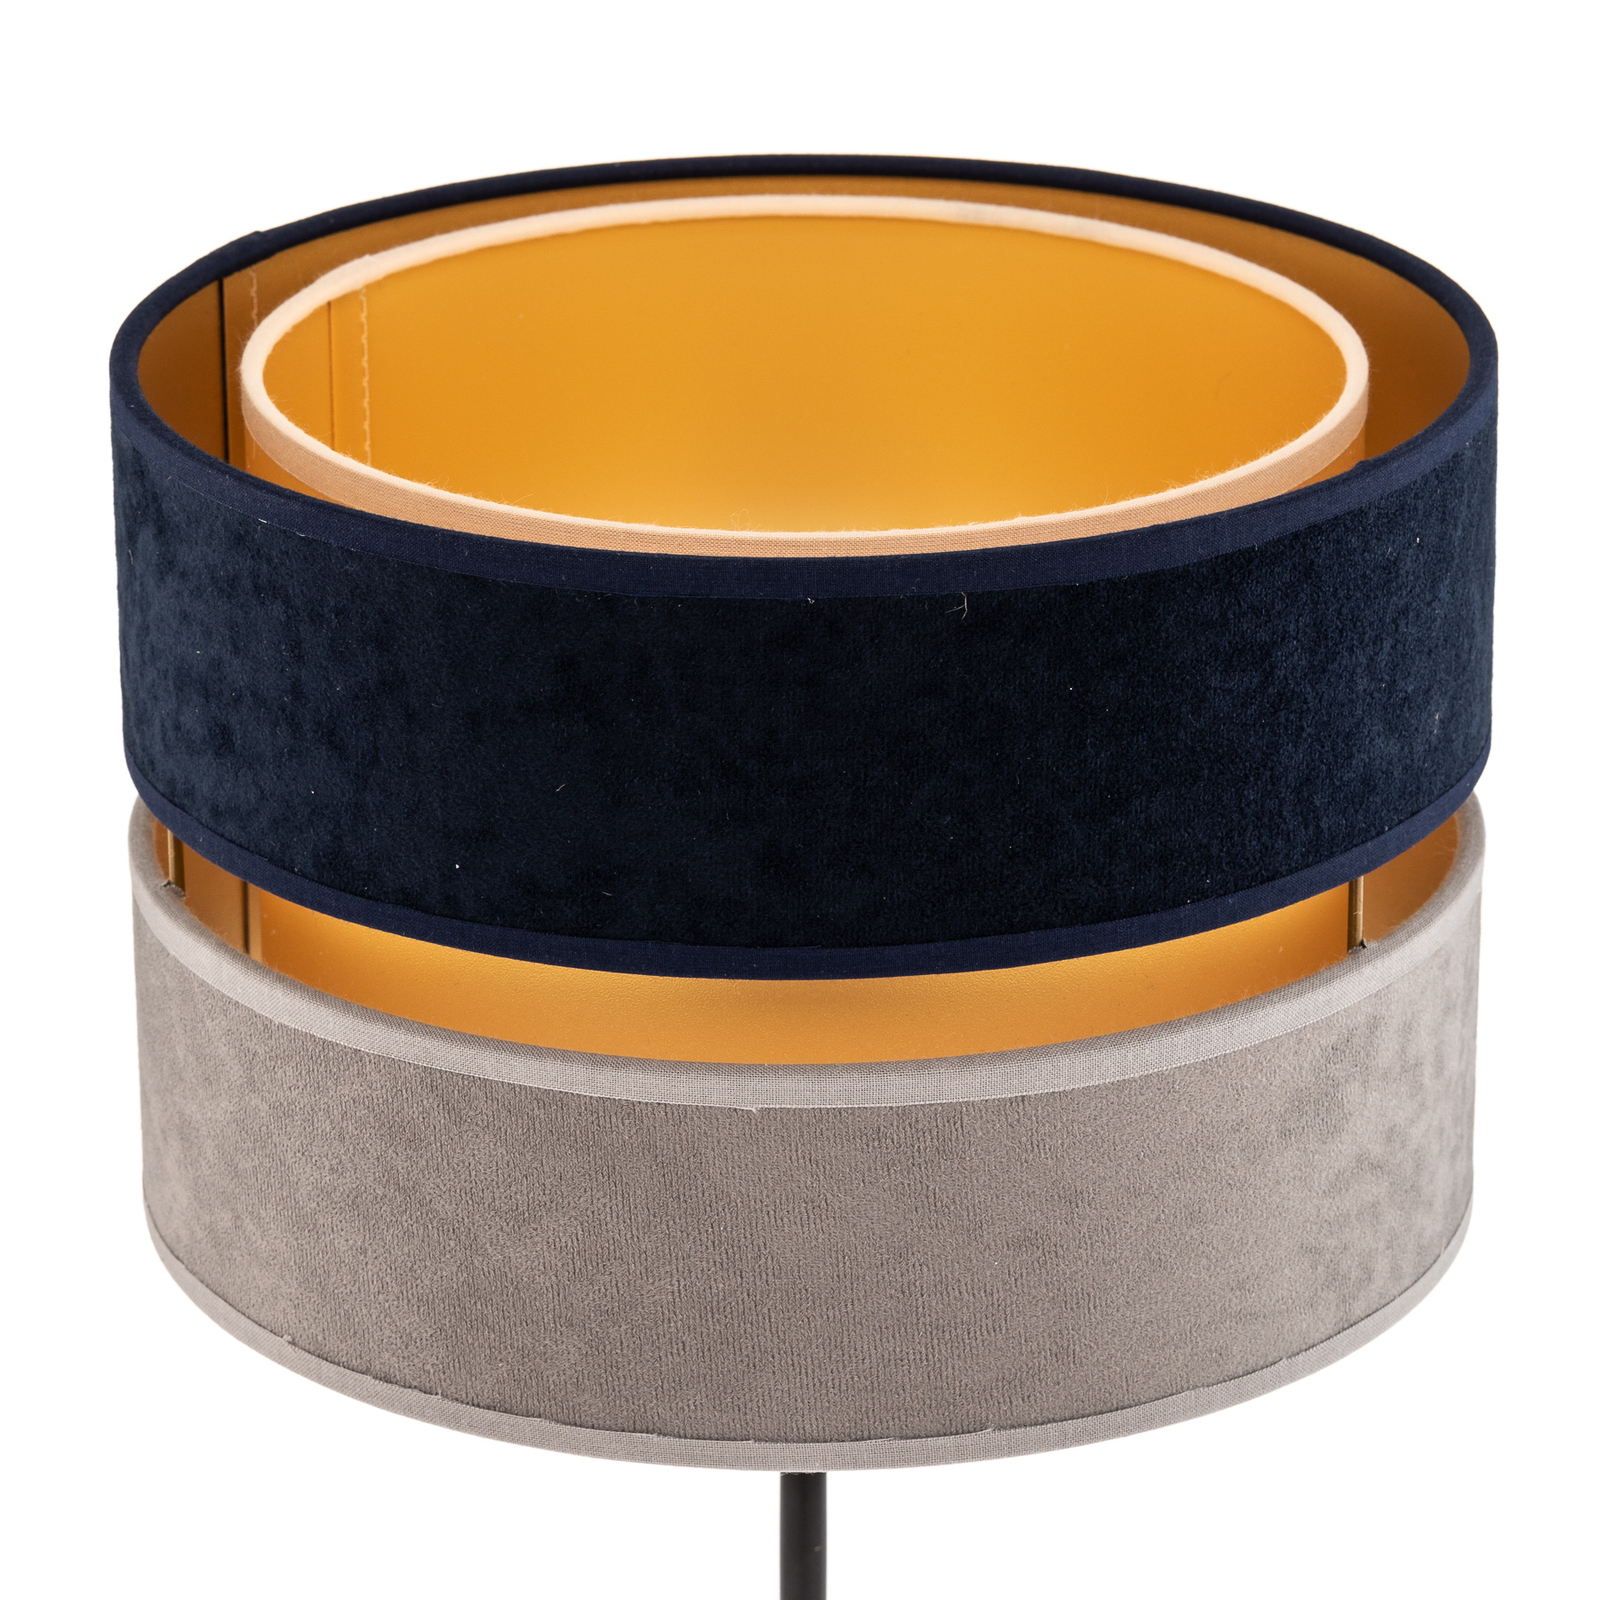 Bordlampe Duo, marineblå/grå/gull, høyde 50 cm